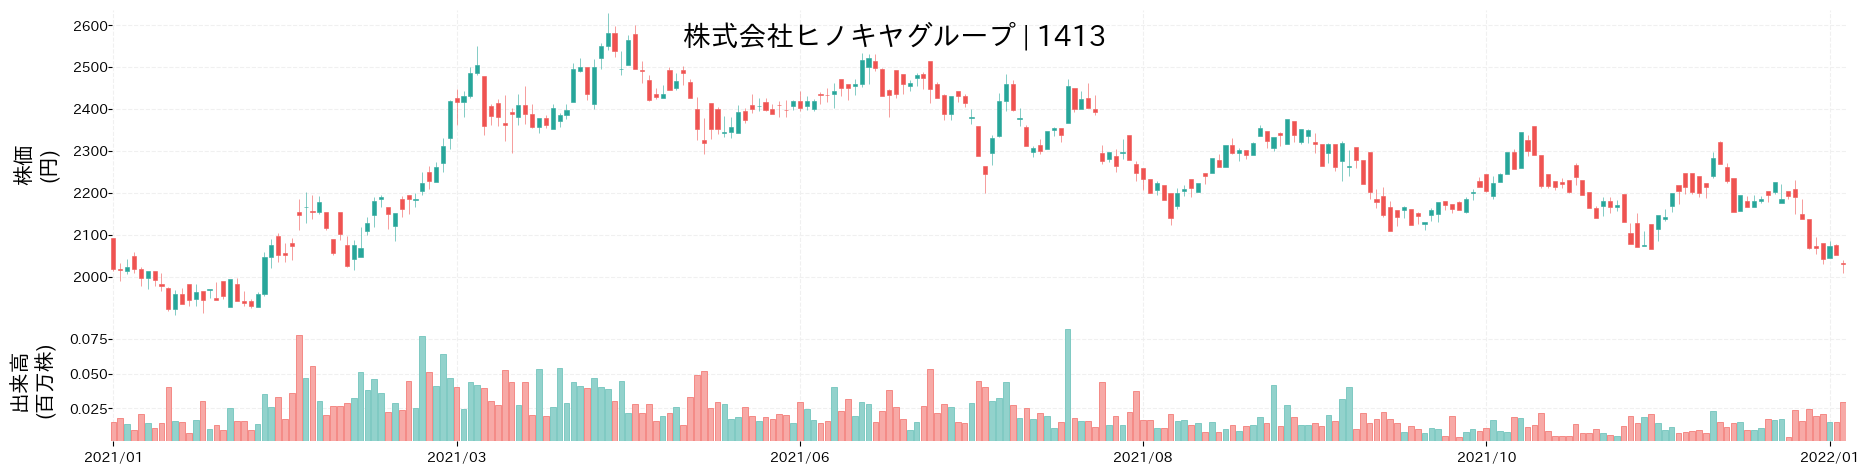 ヒノキヤグループの株価推移(2021)